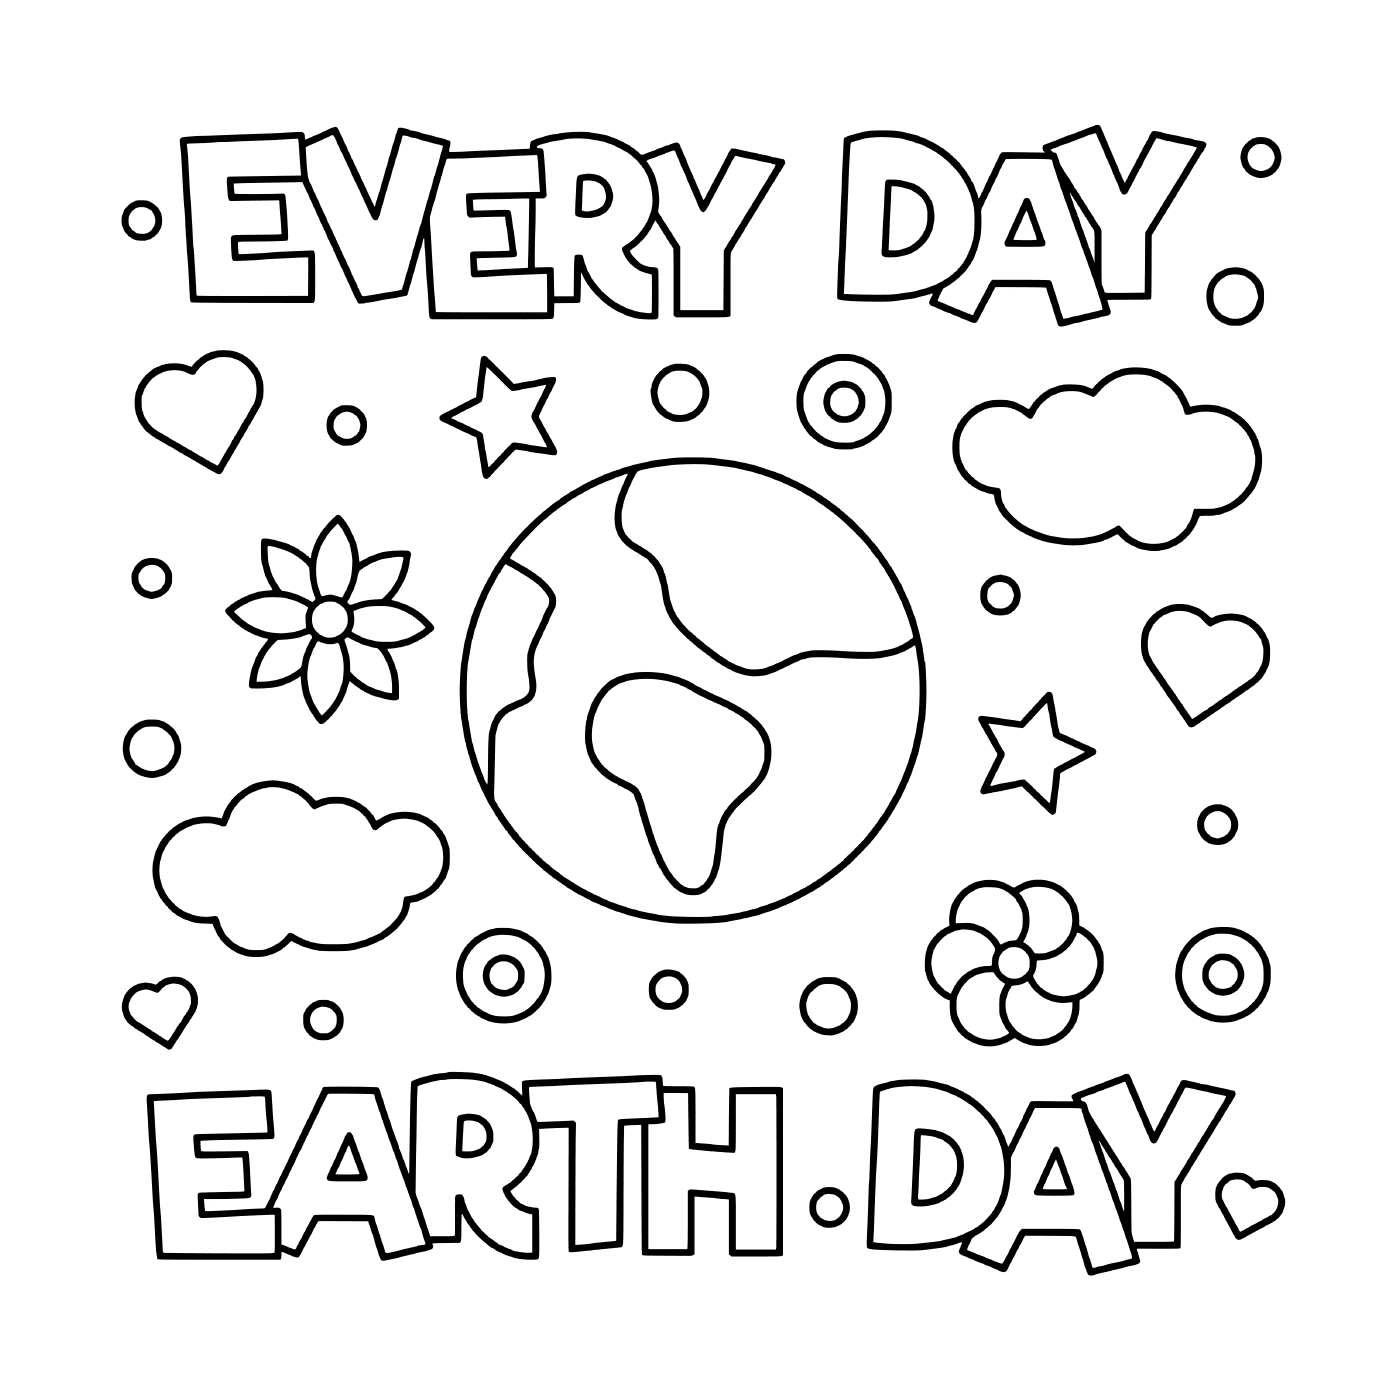  Día de la Tierra: Todos los días 